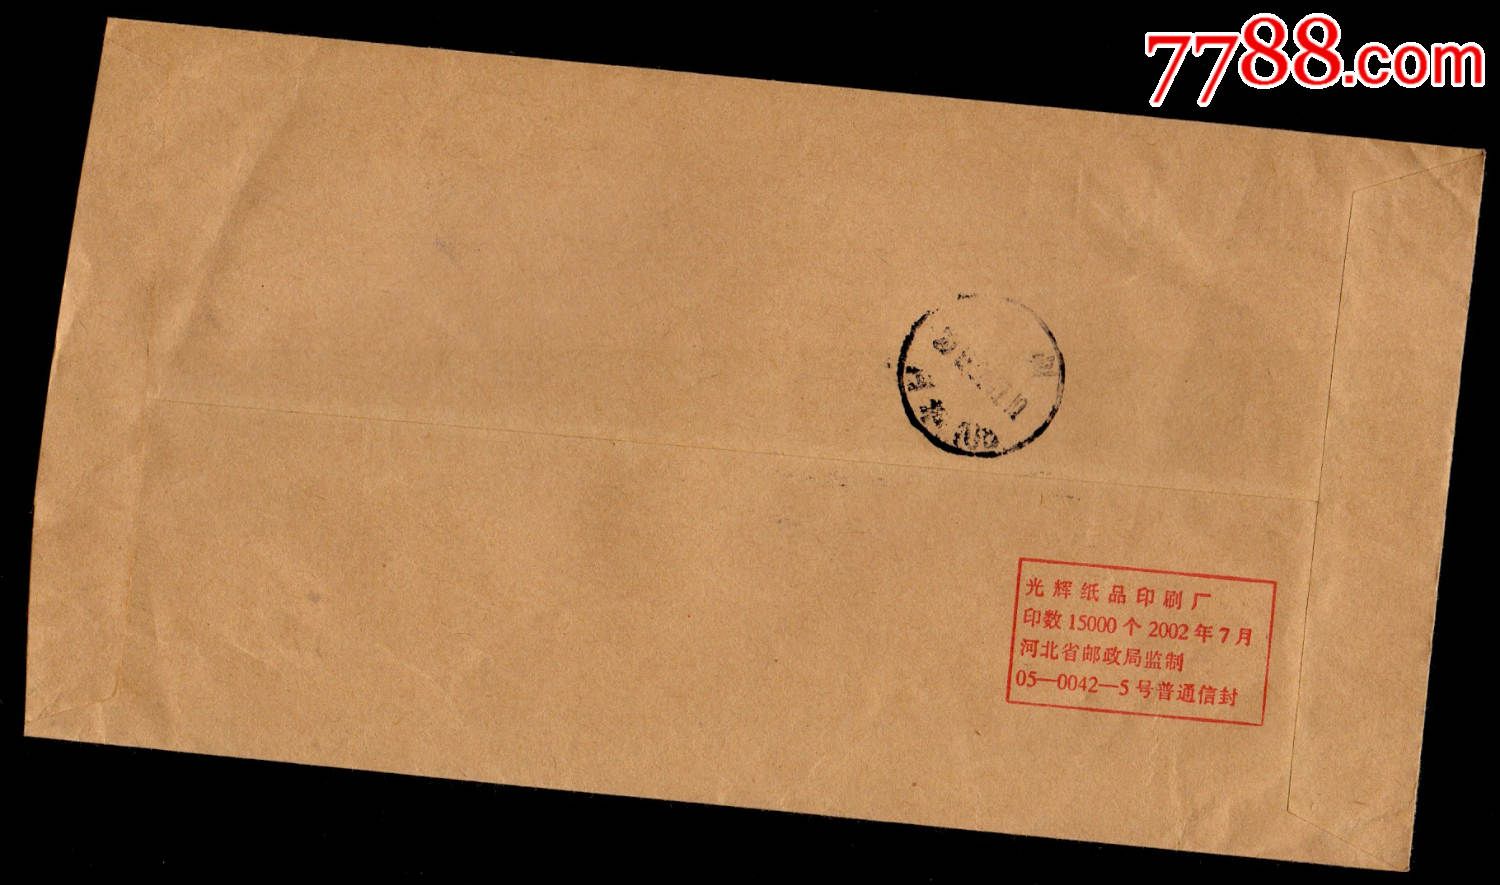 军邮义务兵免邮封-北京中心局分拣戳-价格:35元